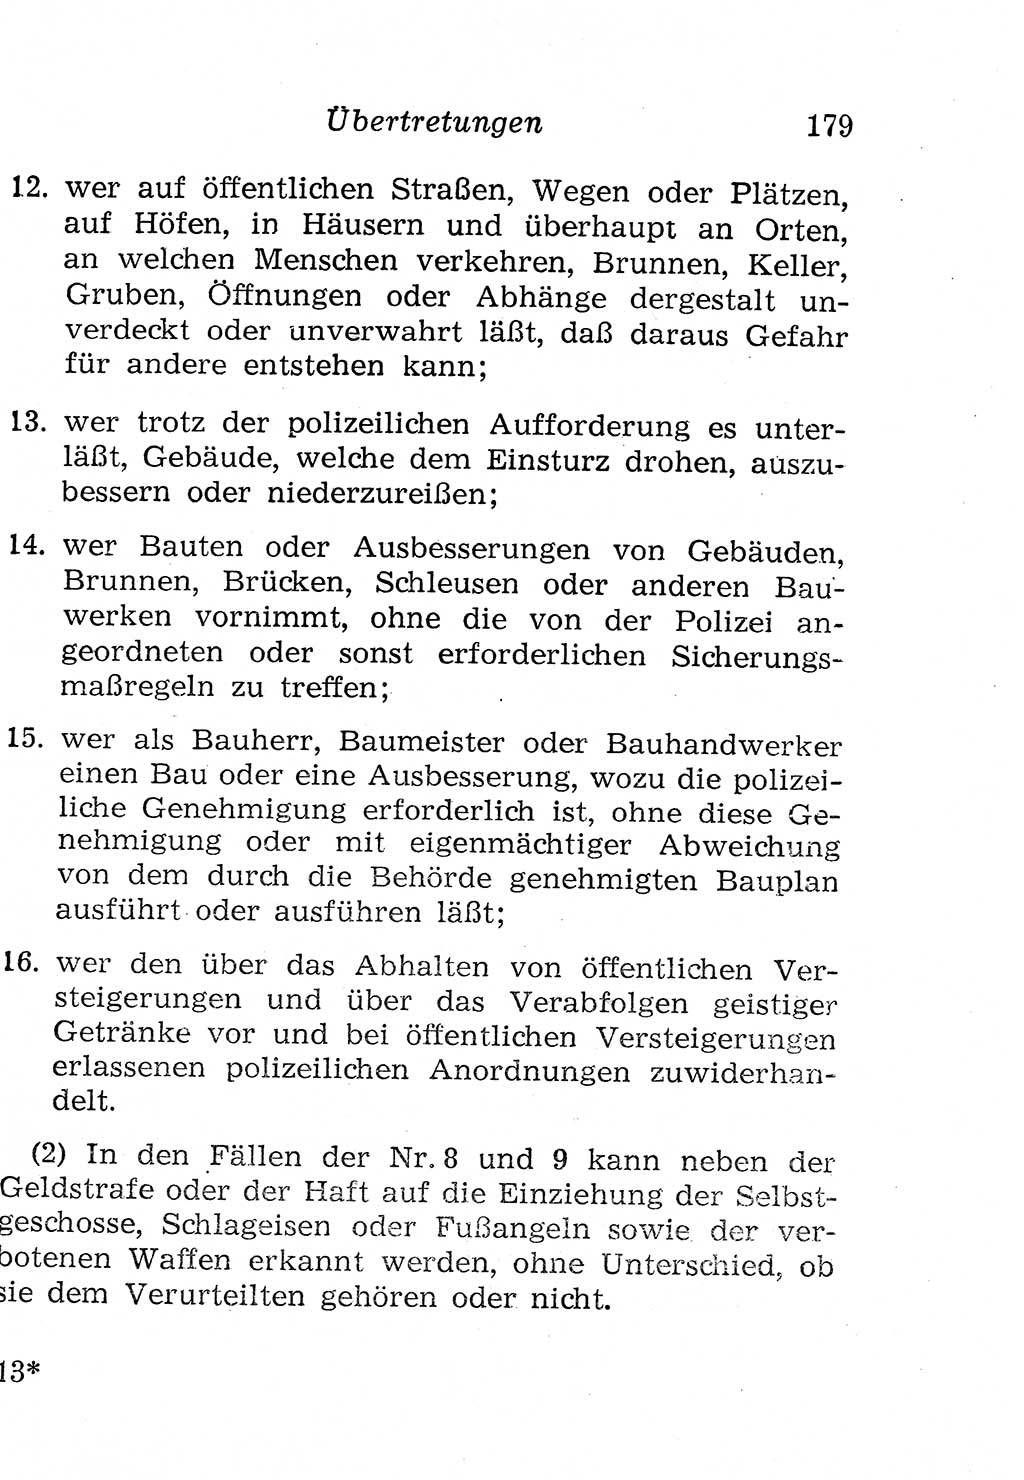 Strafgesetzbuch (StGB) und andere Strafgesetze [Deutsche Demokratische Republik (DDR)] 1958, Seite 179 (StGB Strafges. DDR 1958, S. 179)